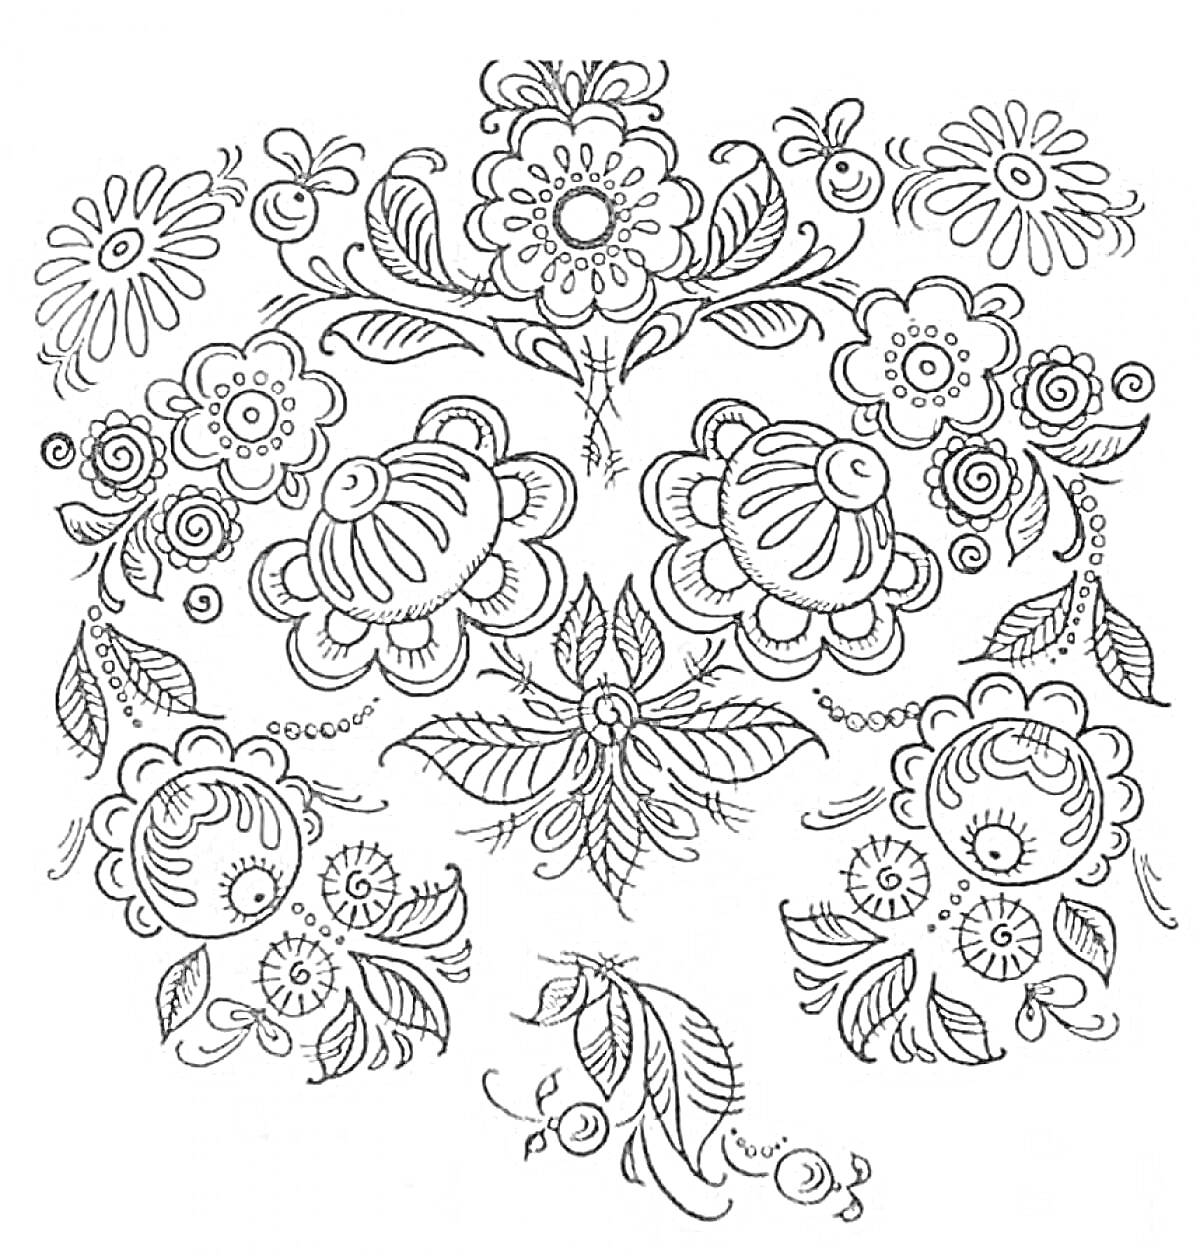 Раскраска Хохлома - цветочный узор с крупными и мелкими цветами, листьями и веточками